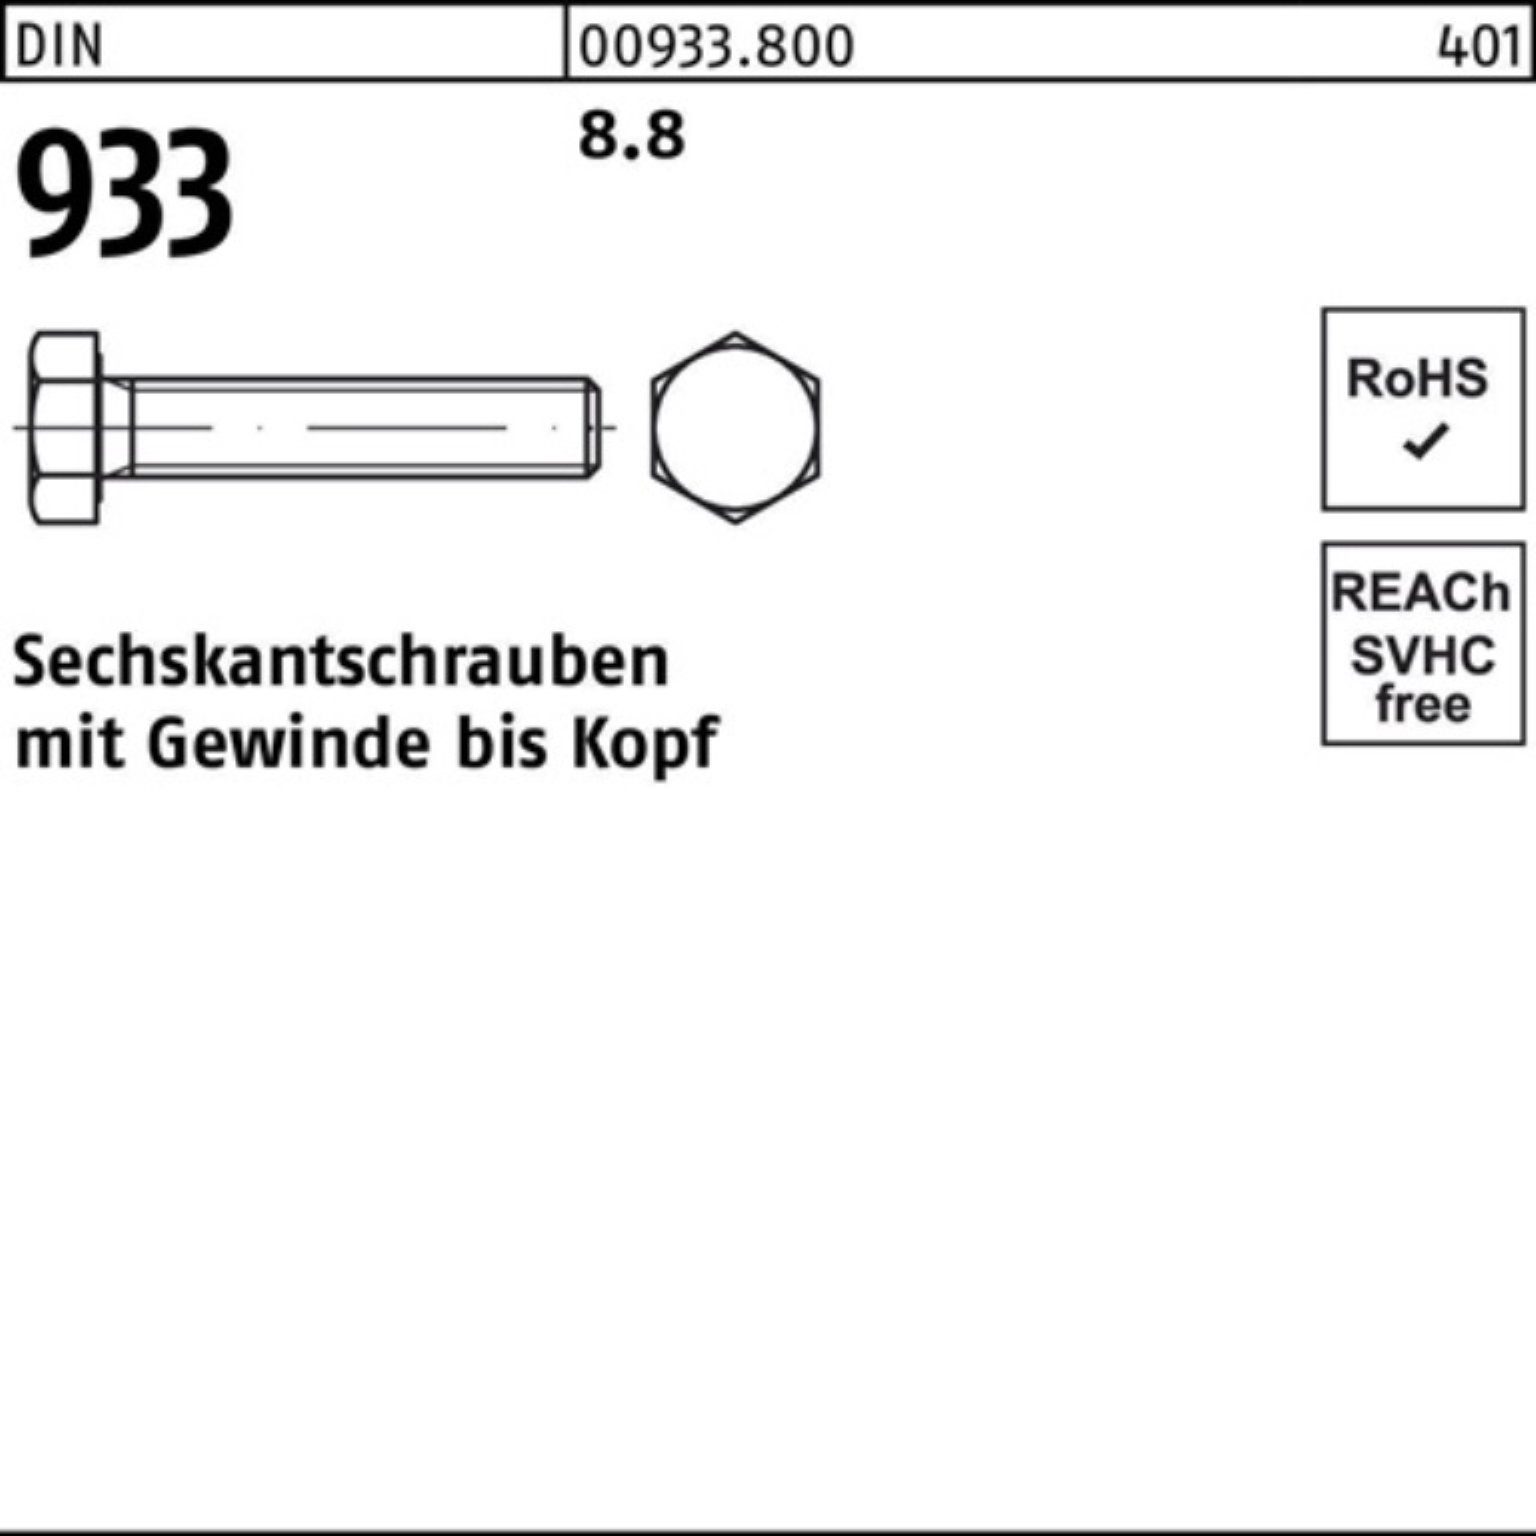 Reyher 200 933 Sechskantschraube Sechskantschraube 100 Stück M8x Pack VG 933 8.8 DIN 100er DIN